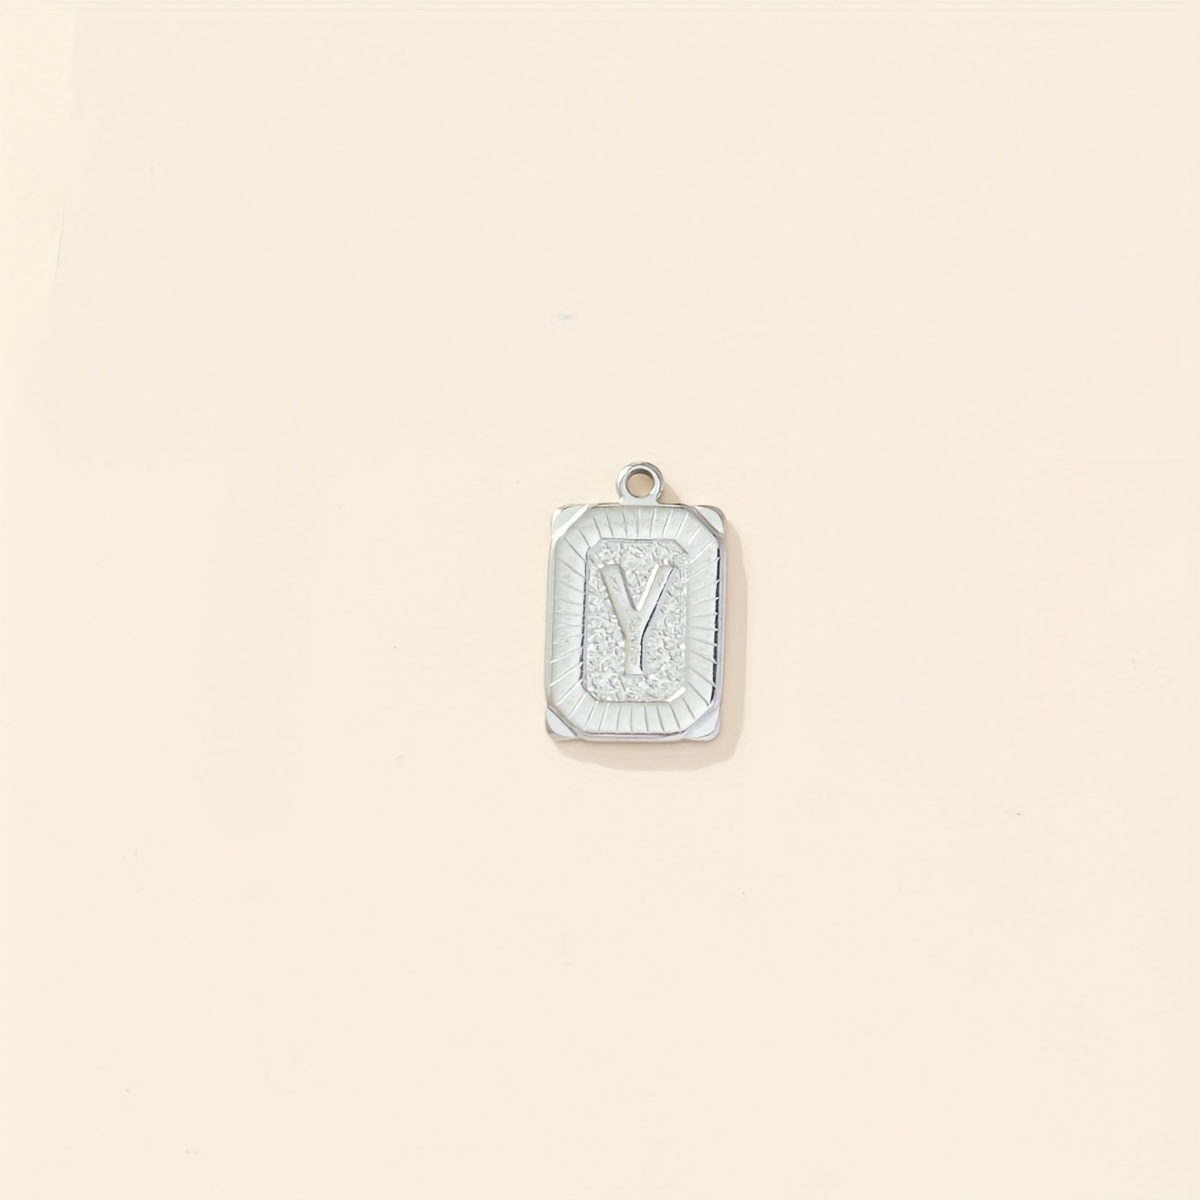 Louis Vuitton Lv Initial Pendant Monogram Necklace mens accessories